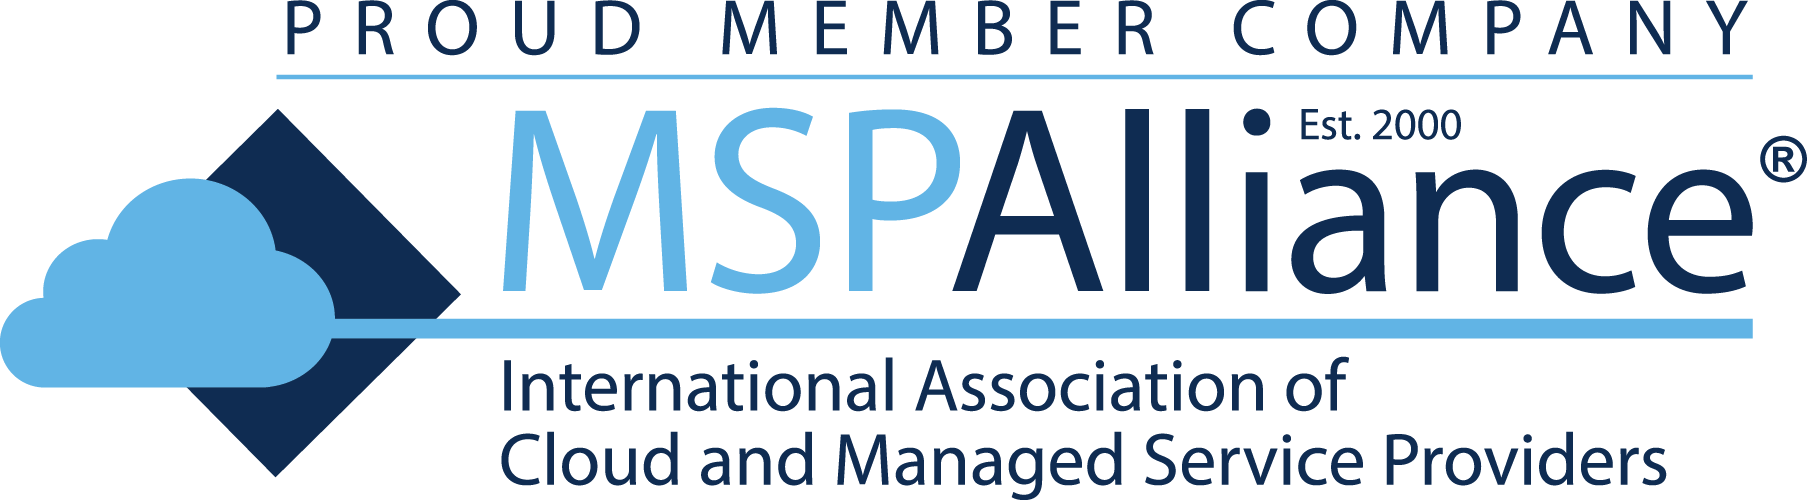 MSPA Member Logo